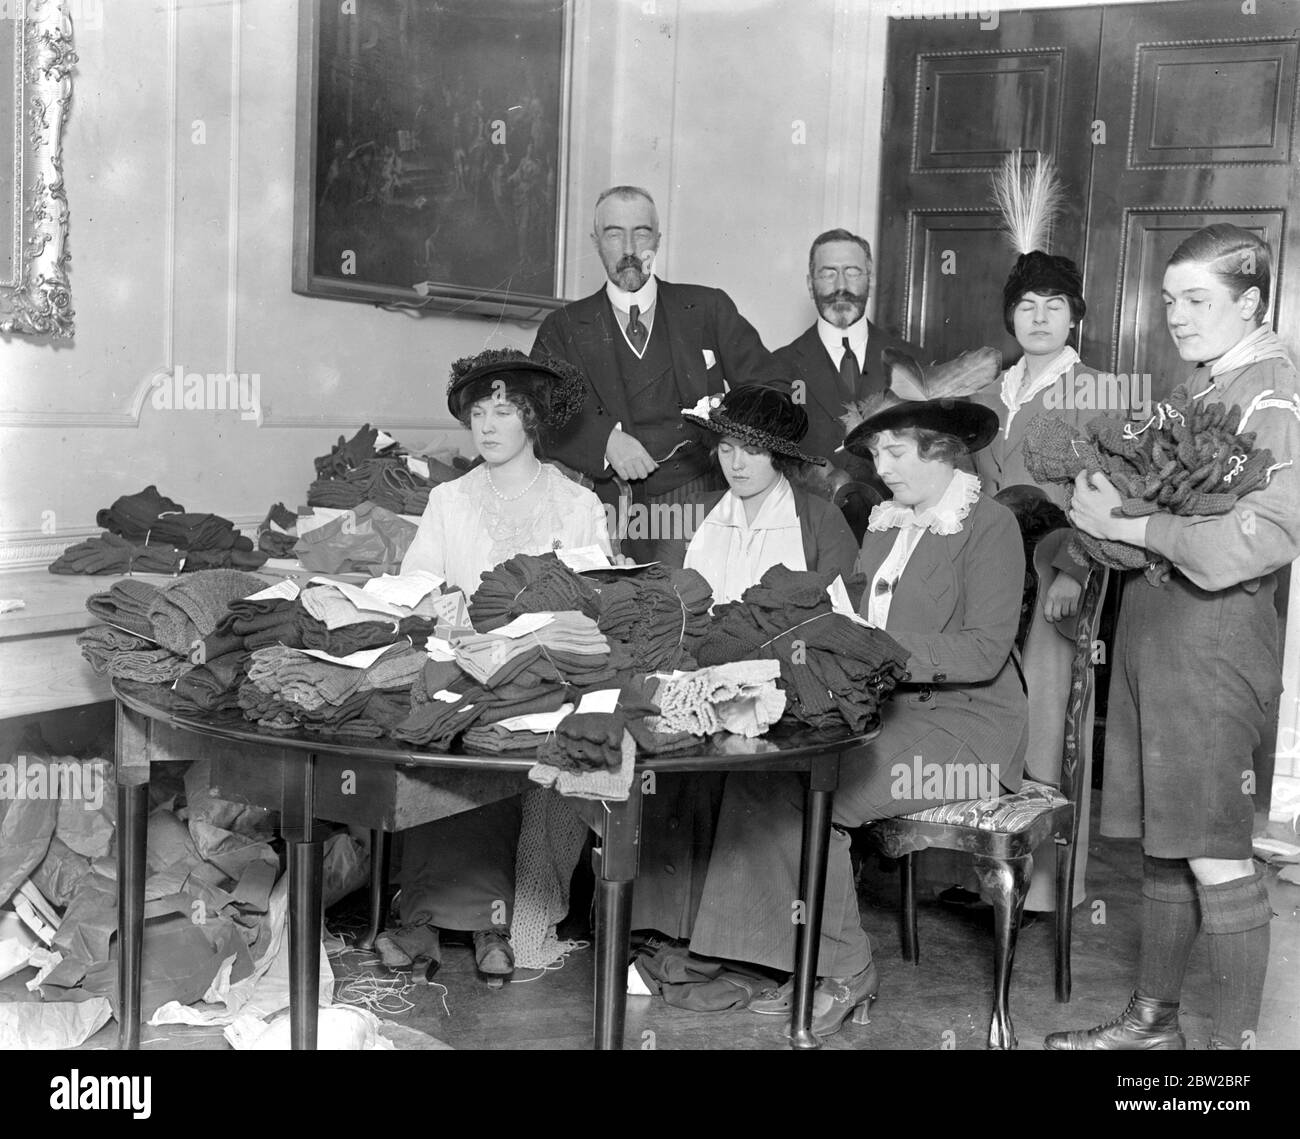 Le Grand-duc Michael, la comtesse Zia et Nada Torby collectent des fonds pour les foulards et les chaussettes pour les soldats. 1914 - 1918 Banque D'Images